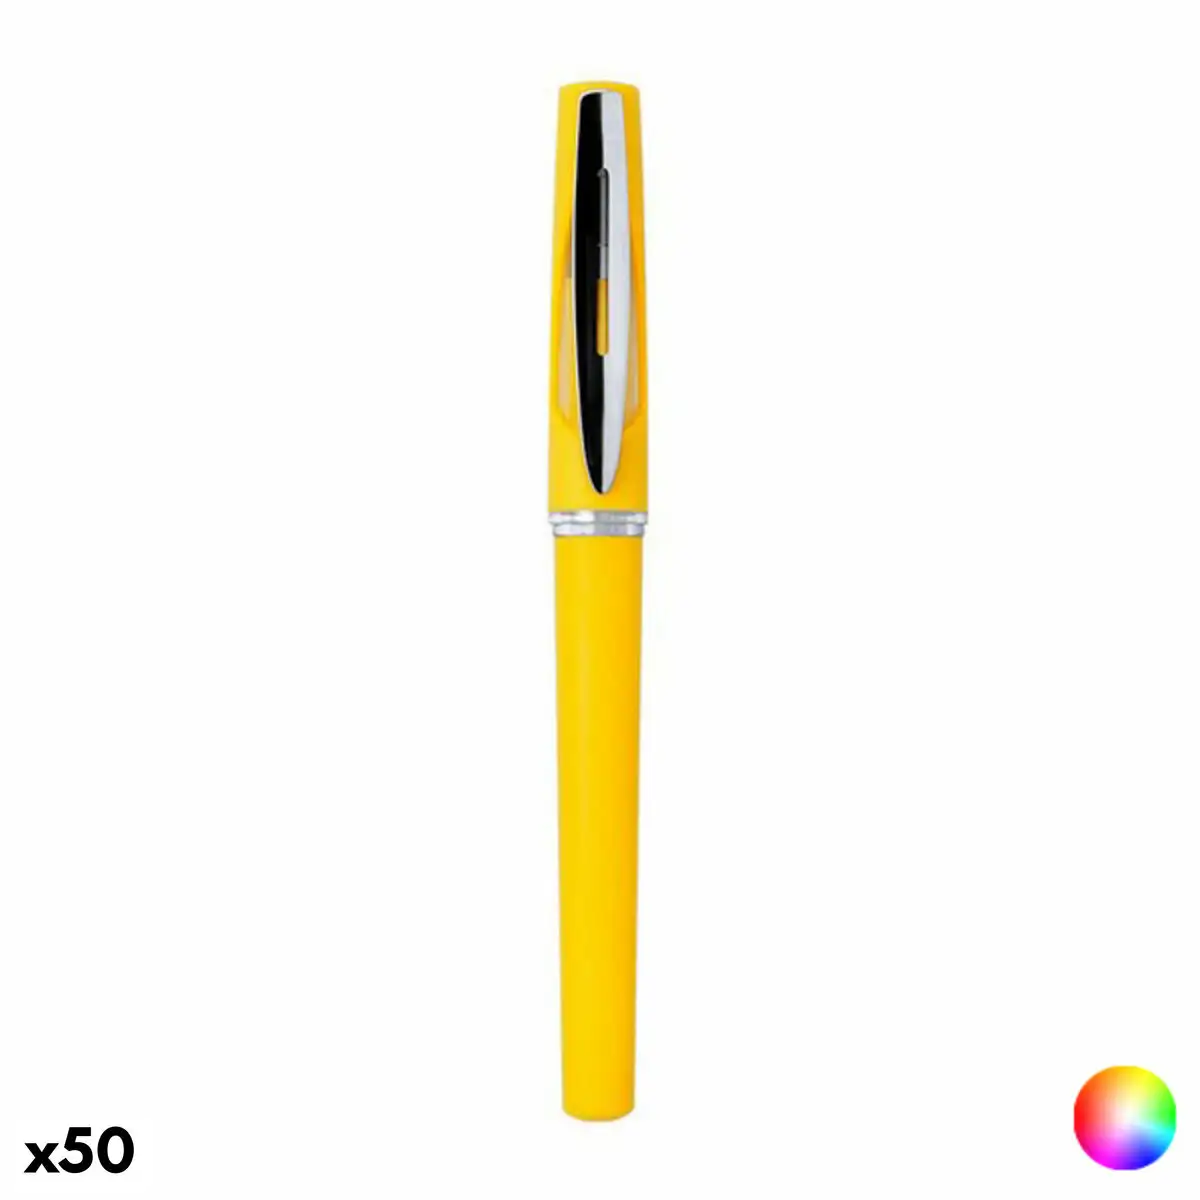 Crayon roller vuduknives 146350 50 unites _3393. DIAYTAR SENEGAL - Votre Destination pour un Shopping Réfléchi. Découvrez notre gamme variée et choisissez des produits qui correspondent à vos valeurs et à votre style de vie.